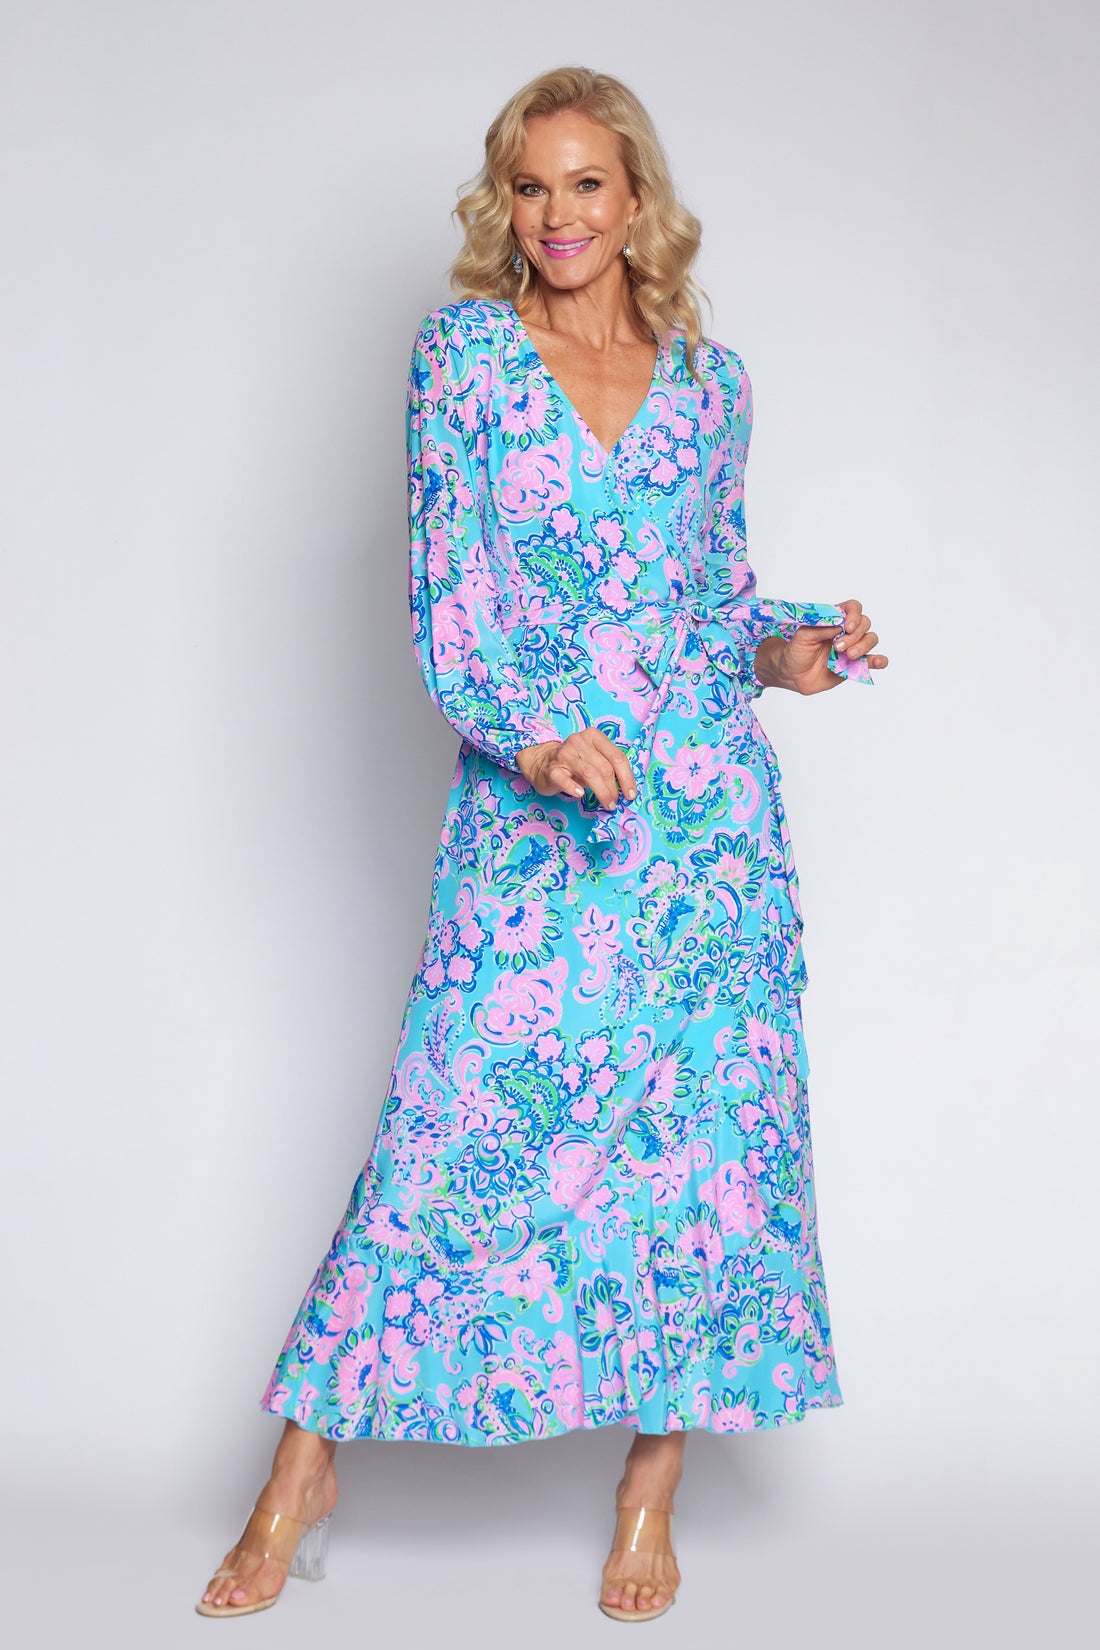 Amalfi Blue and Pink Wrap dress (Long)